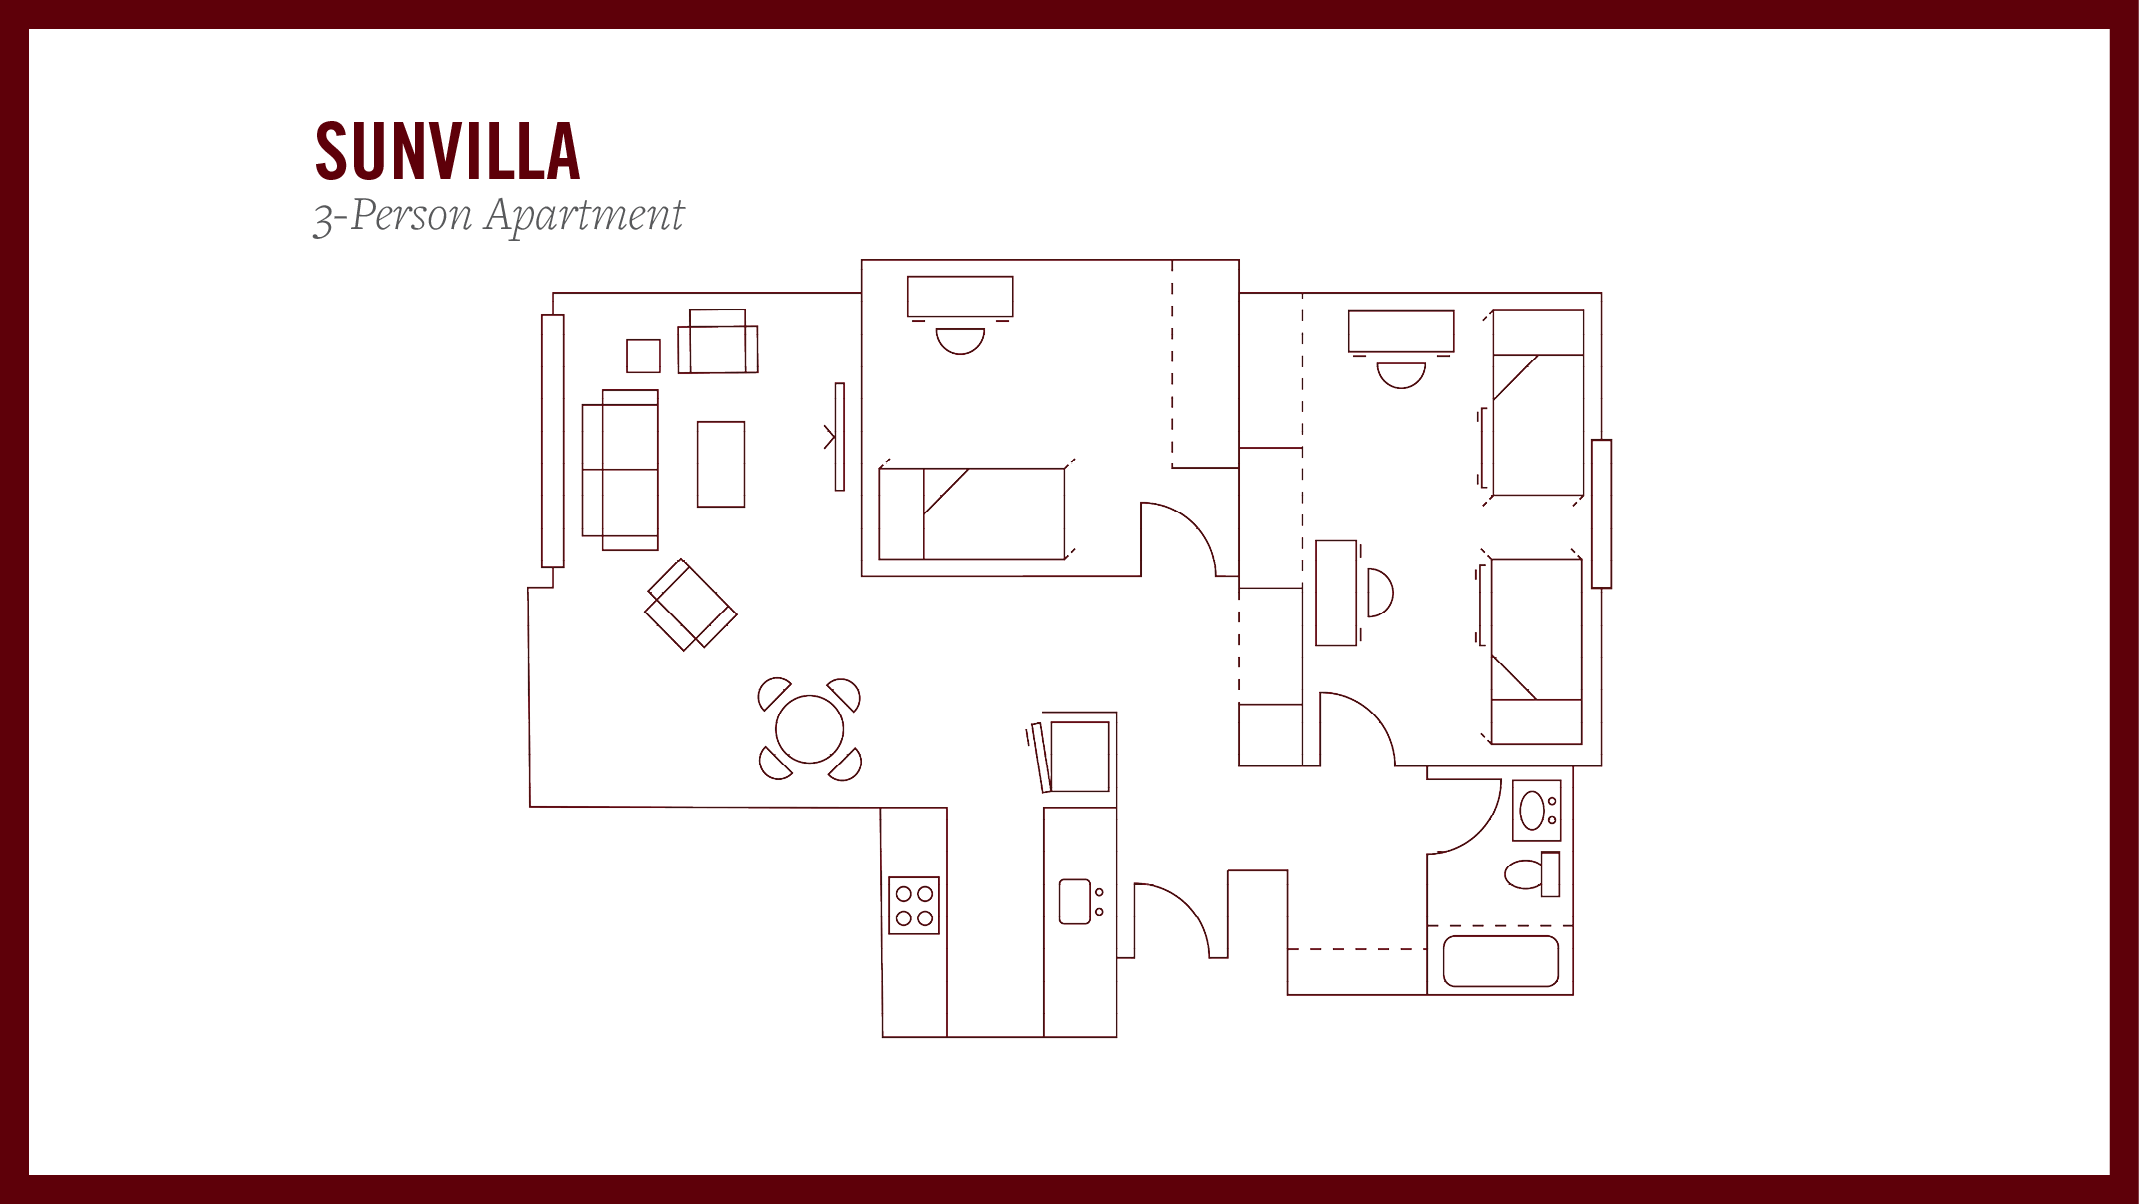 Sunvilla 3-person apartment